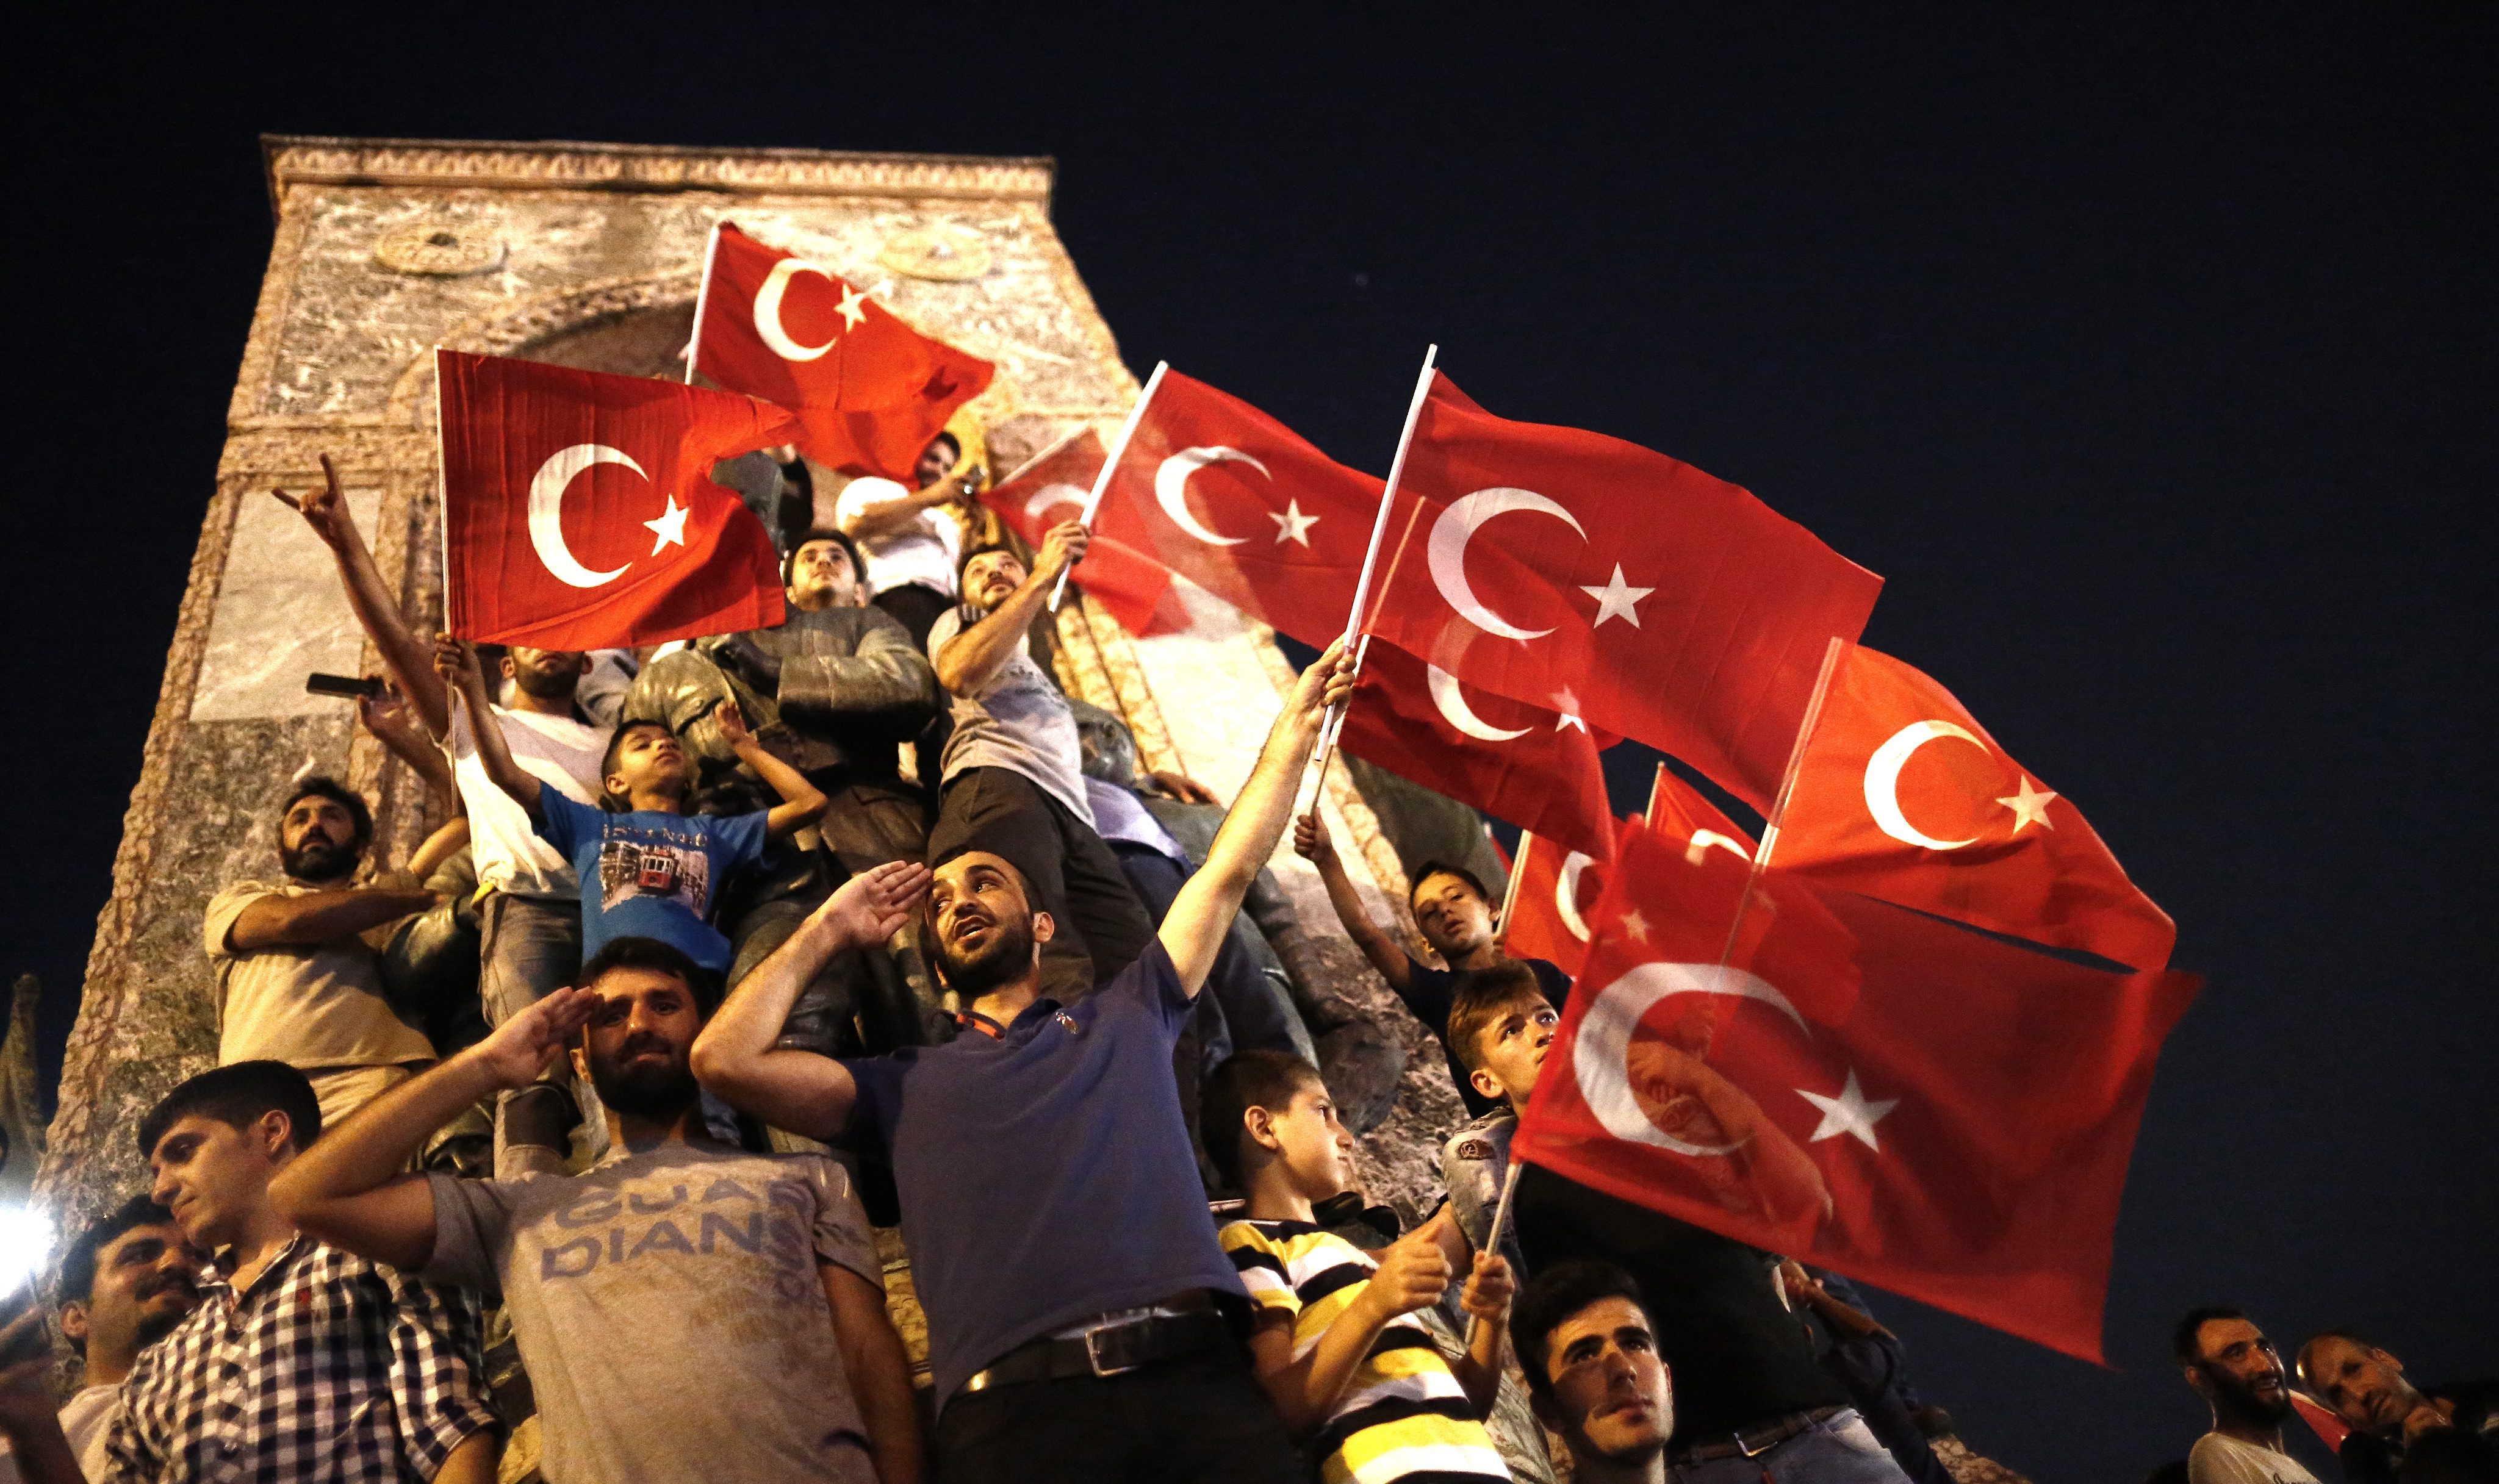 Επιβεβαιώνει το ΝΑΤΟ πως τούρκοι στρατιωτικοί ζήτησαν άσυλο από μέλη του